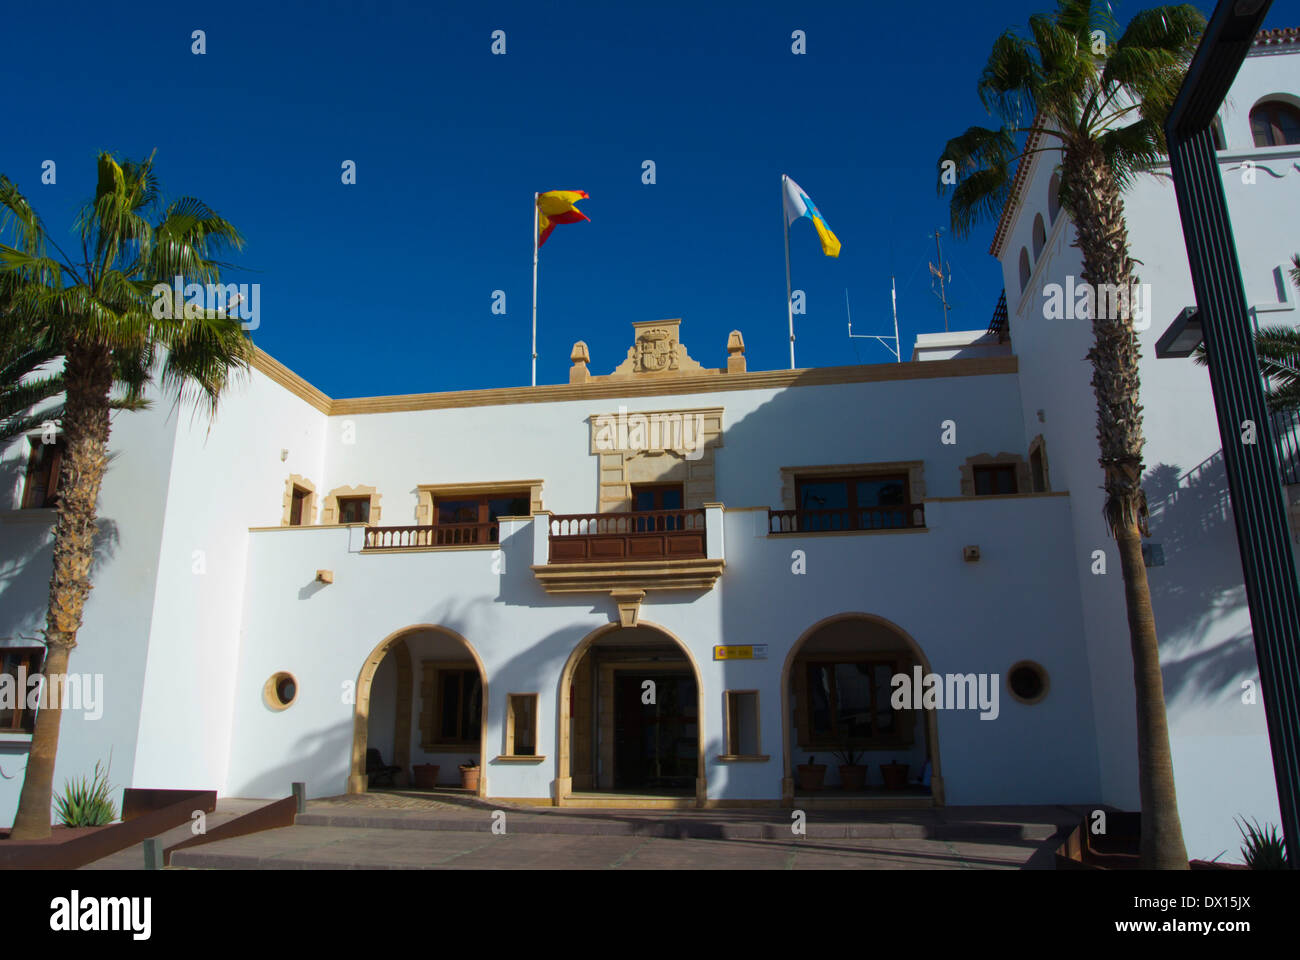 Oficina de Correos, Post office, Puerto del Rosaro, Fuerteventura, the Canary Islands, Spain, Europe Stock Photo